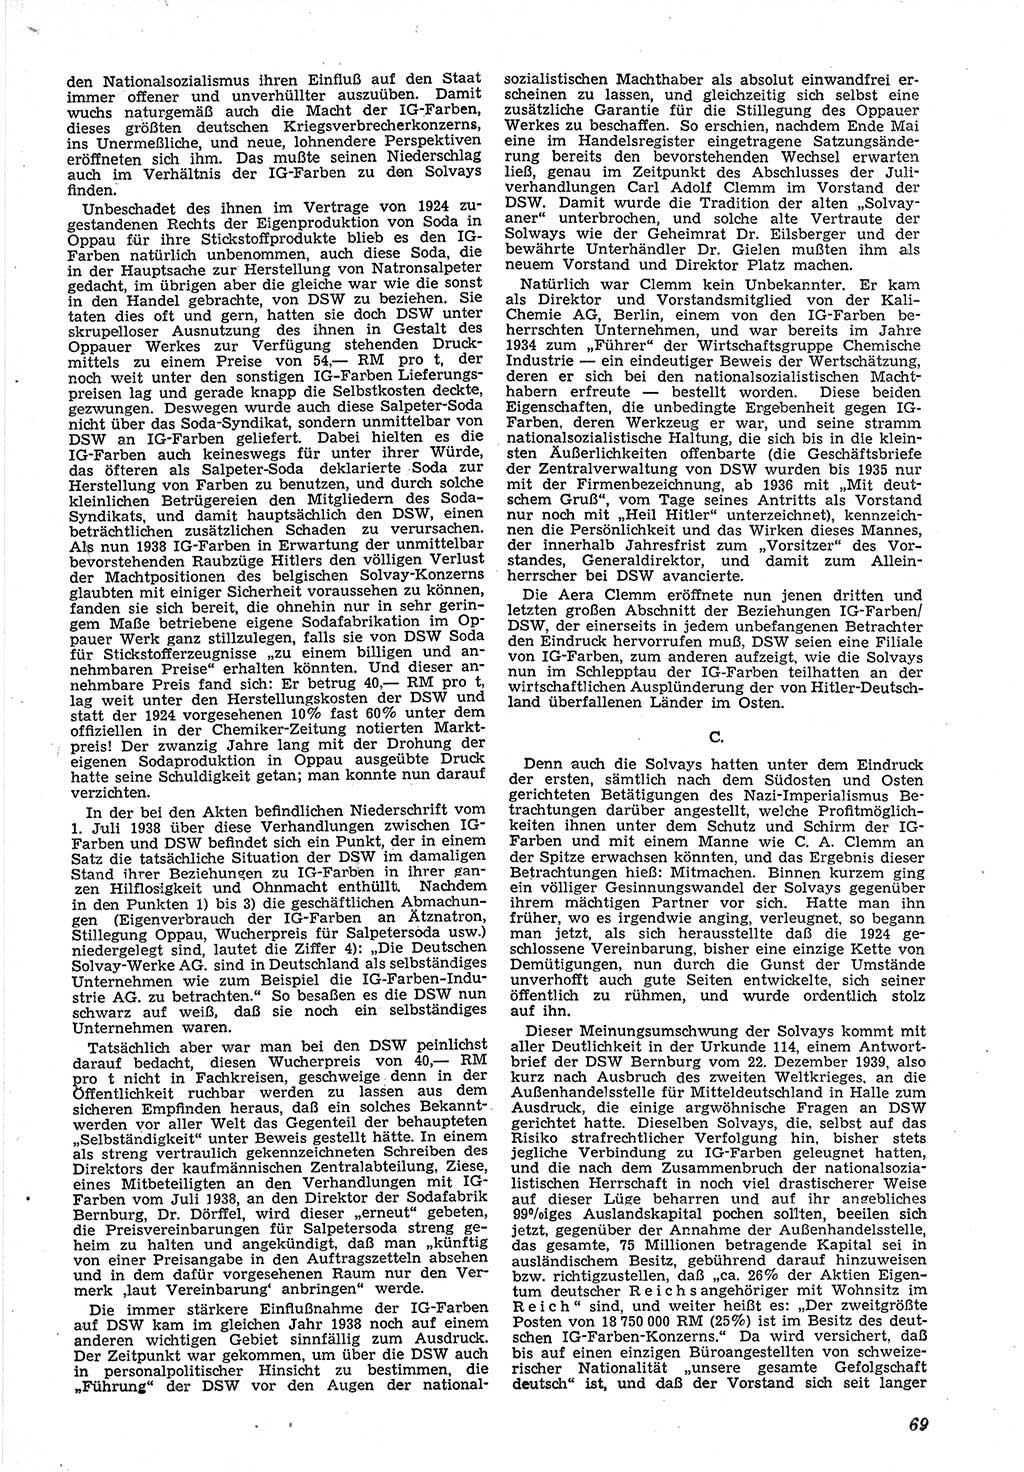 Neue Justiz (NJ), Zeitschrift für Recht und Rechtswissenschaft [Deutsche Demokratische Republik (DDR)], 5. Jahrgang 1951, Seite 69 (NJ DDR 1951, S. 69)